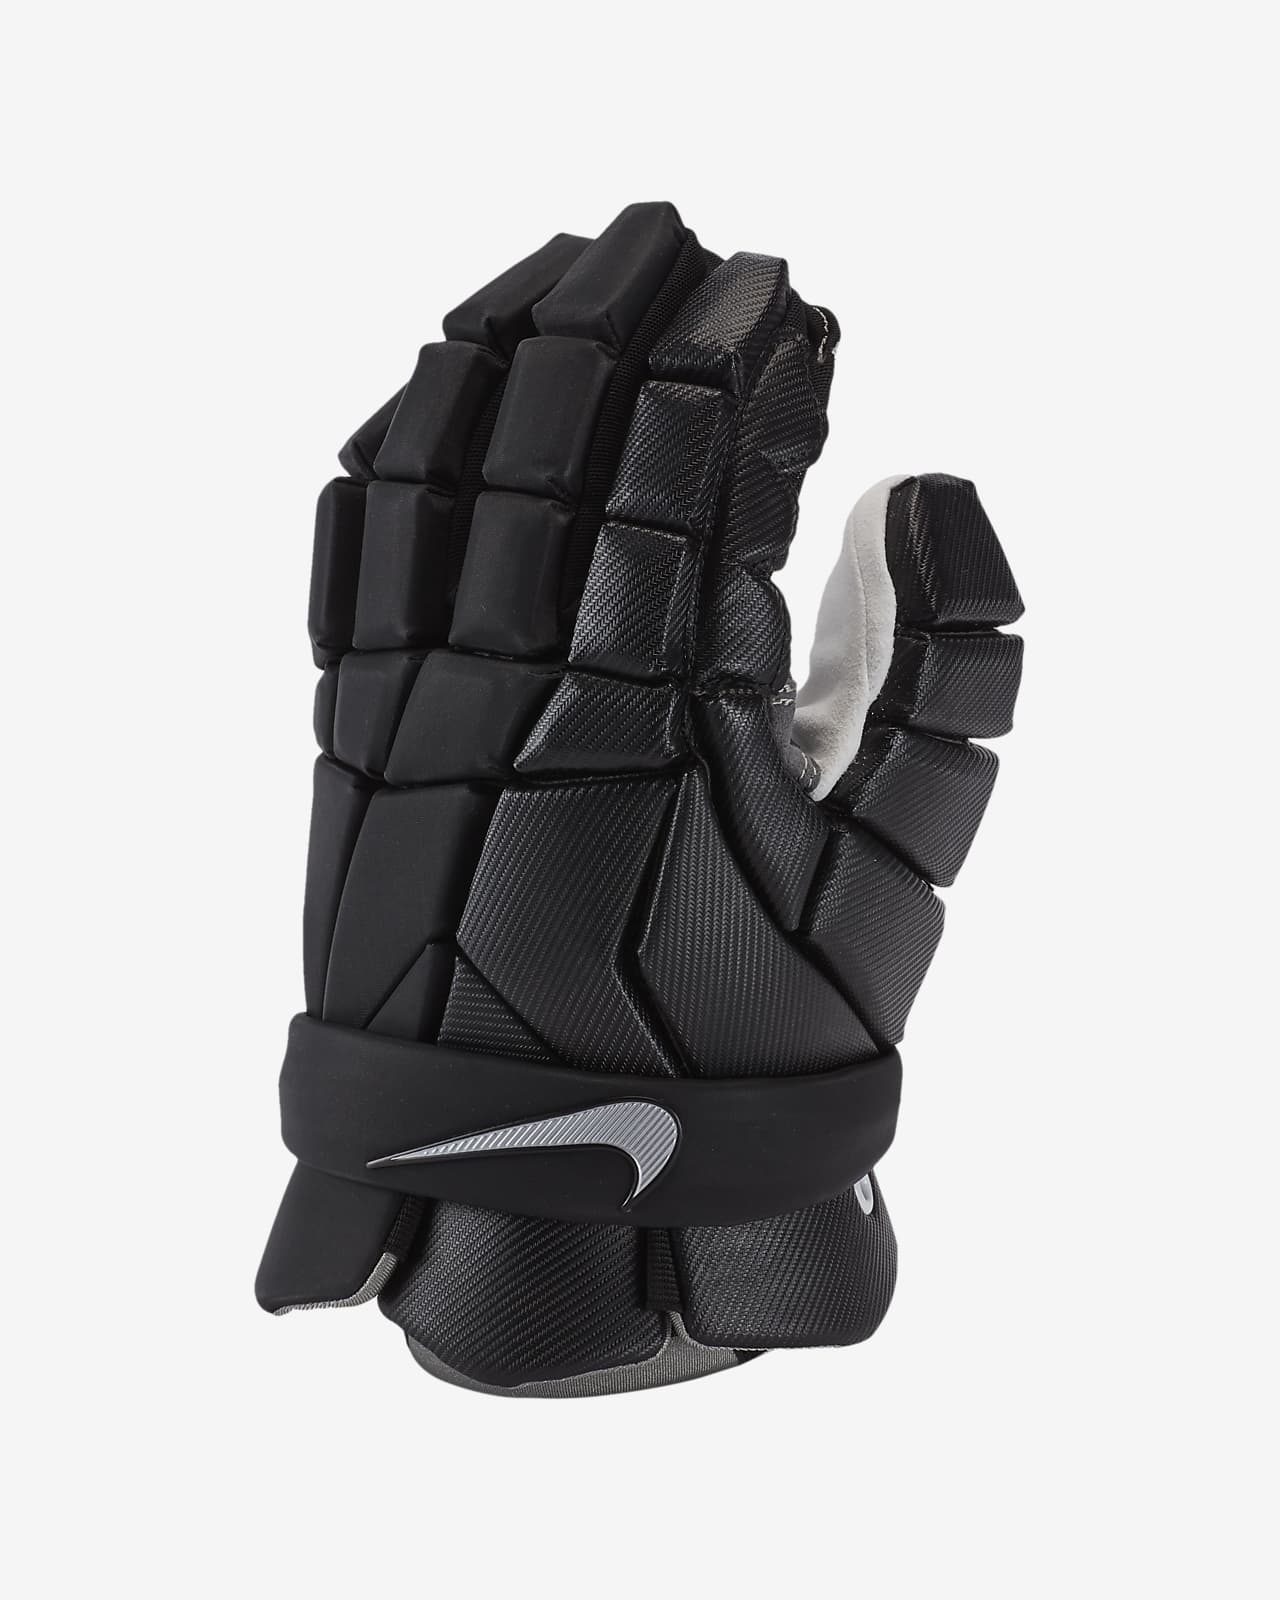 Nike Vapor Men's Lacrosse Gloves